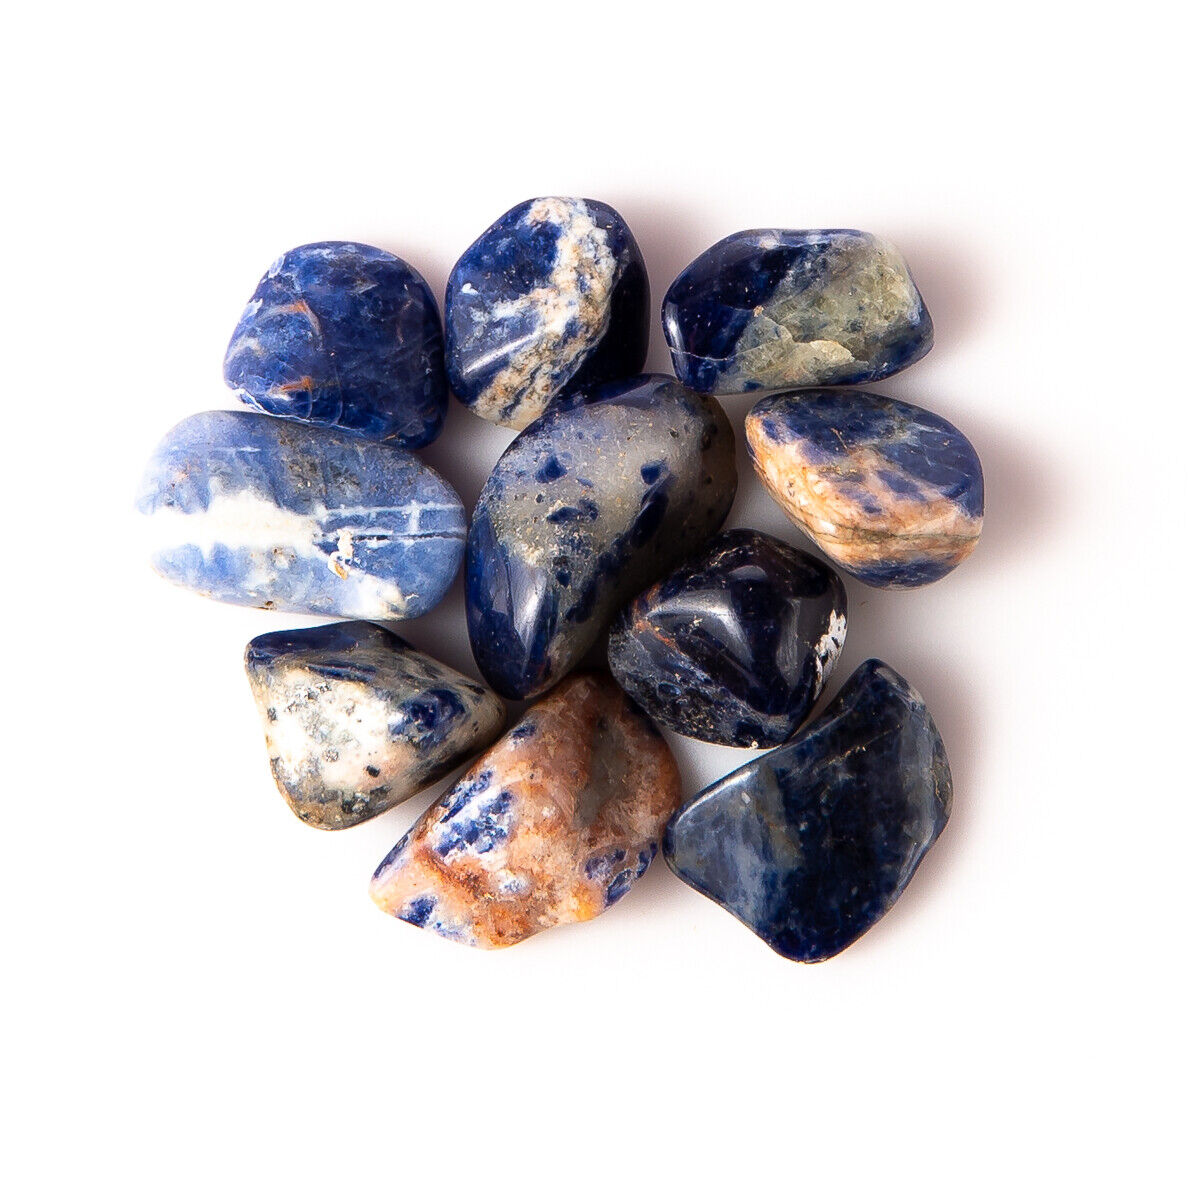 25g Tumbled Sodalite Quartz Gemstone Crystals 5-20 Stones Gem Rock Specimens